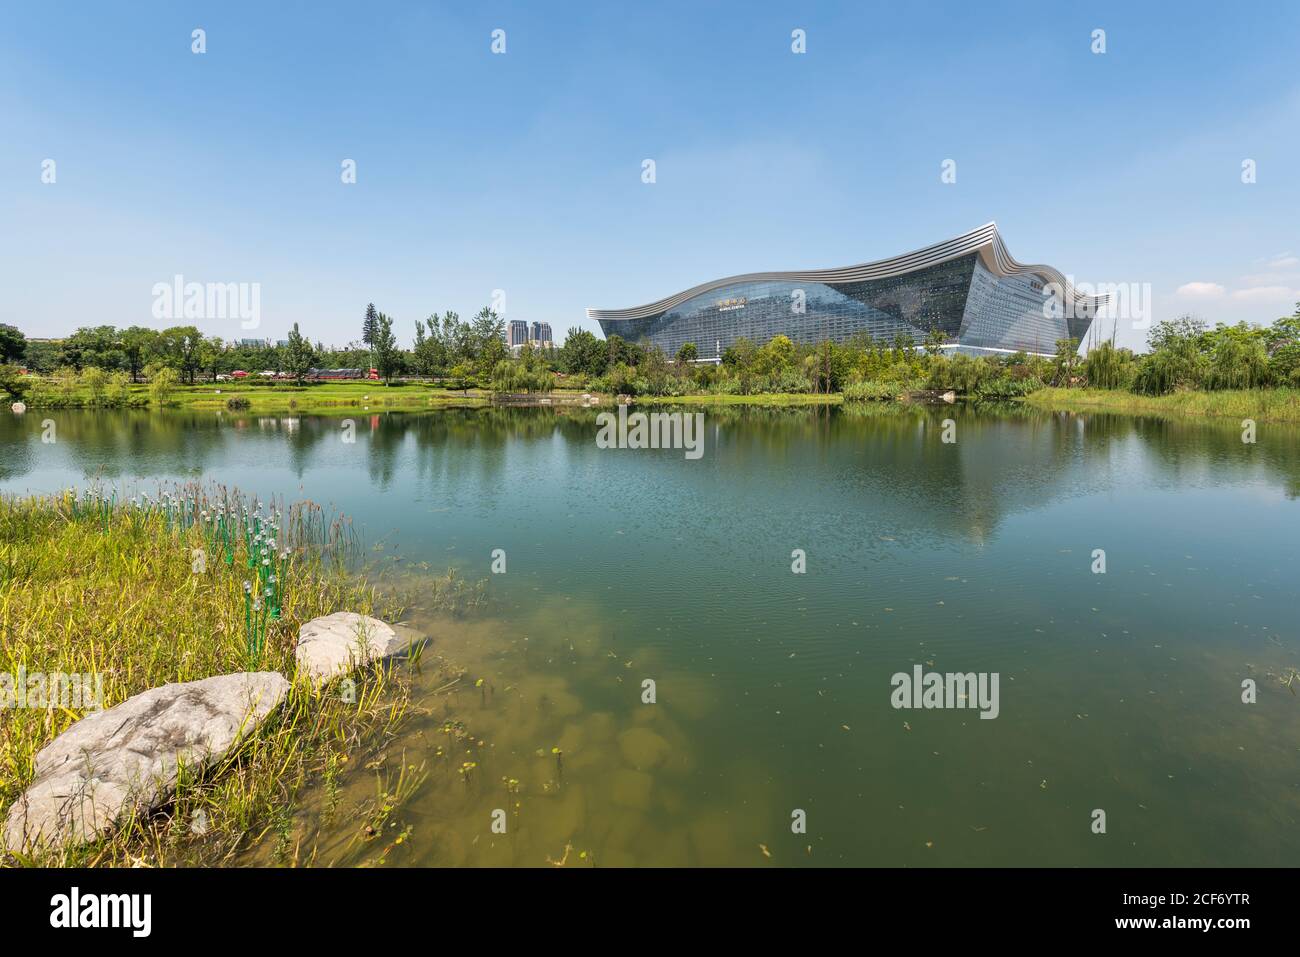 Chengdu, province du Sichuan, Chine - 26 août 2020 : bâtiment du Centre mondial du Nouveau siècle qui se reflète dans un lac par une journée ensoleillée avec un ciel bleu clair Banque D'Images